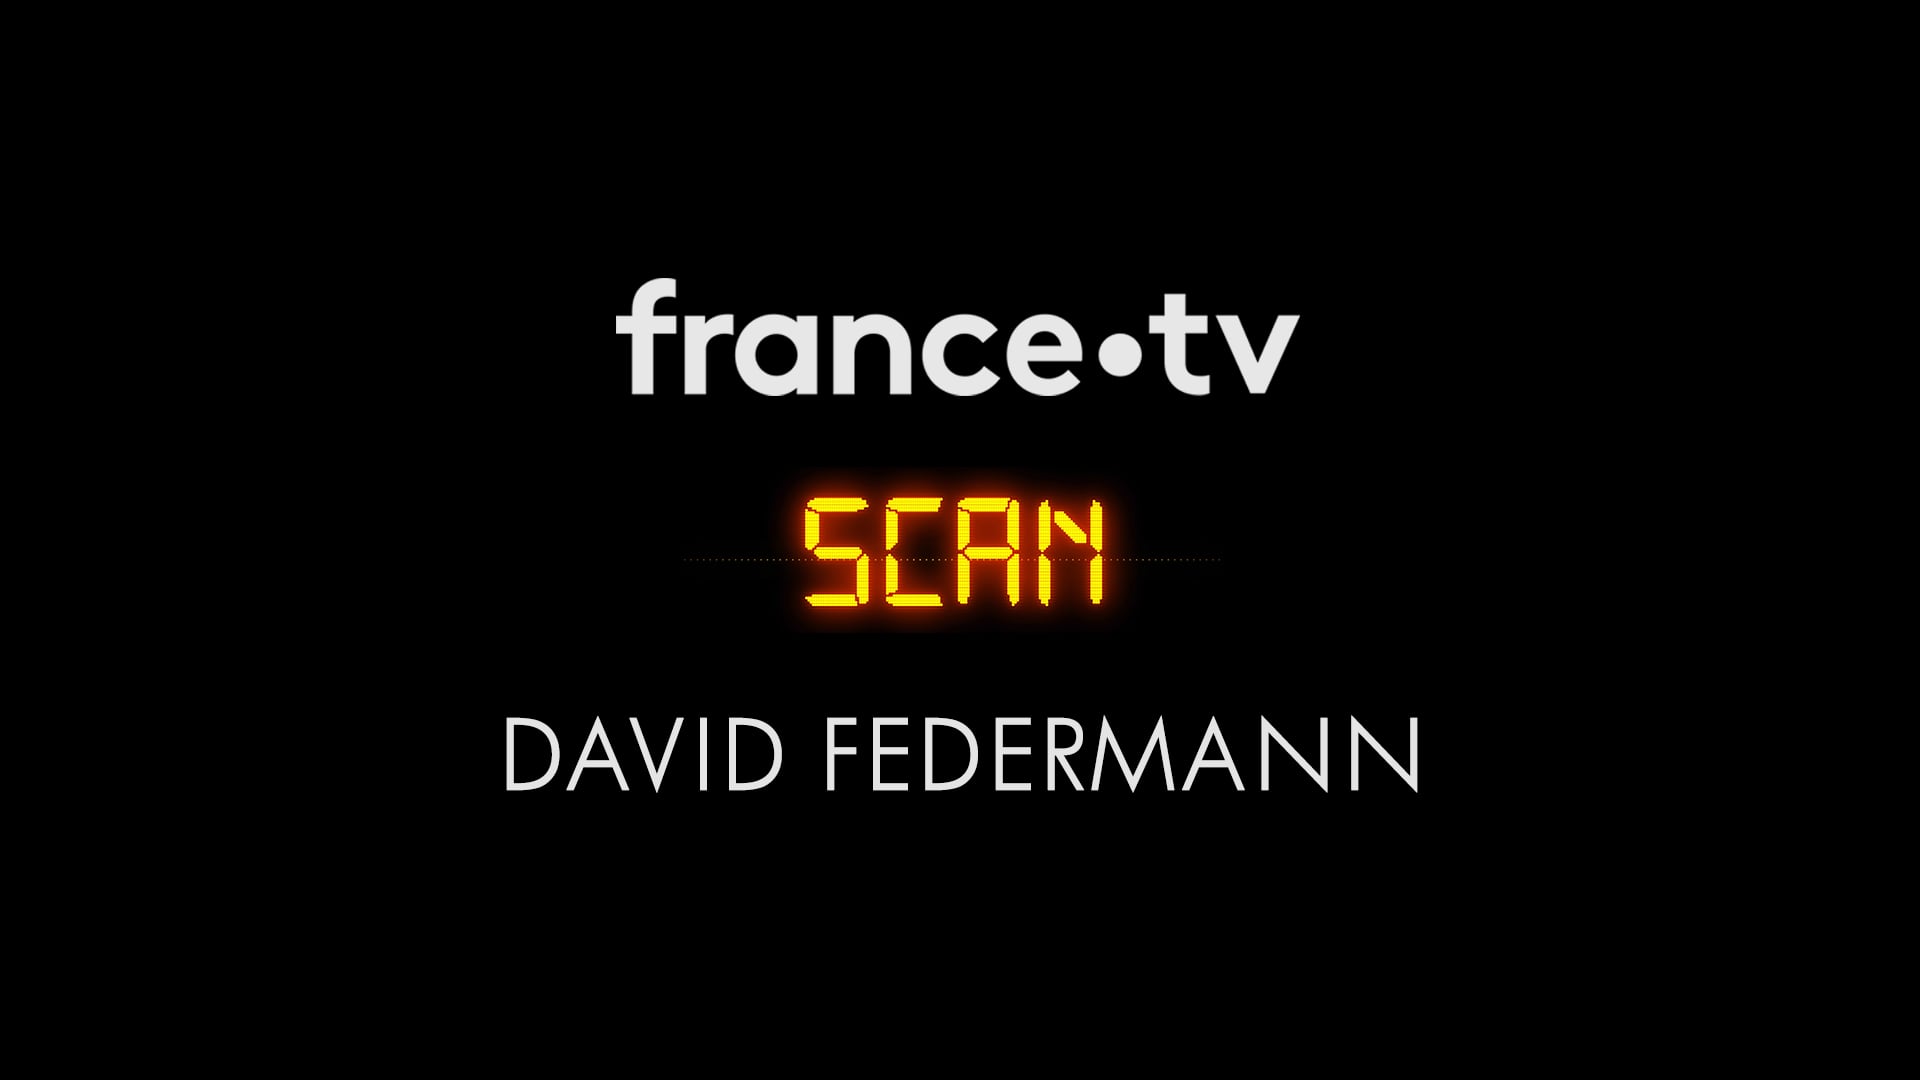 FRANCE TV / SCAN